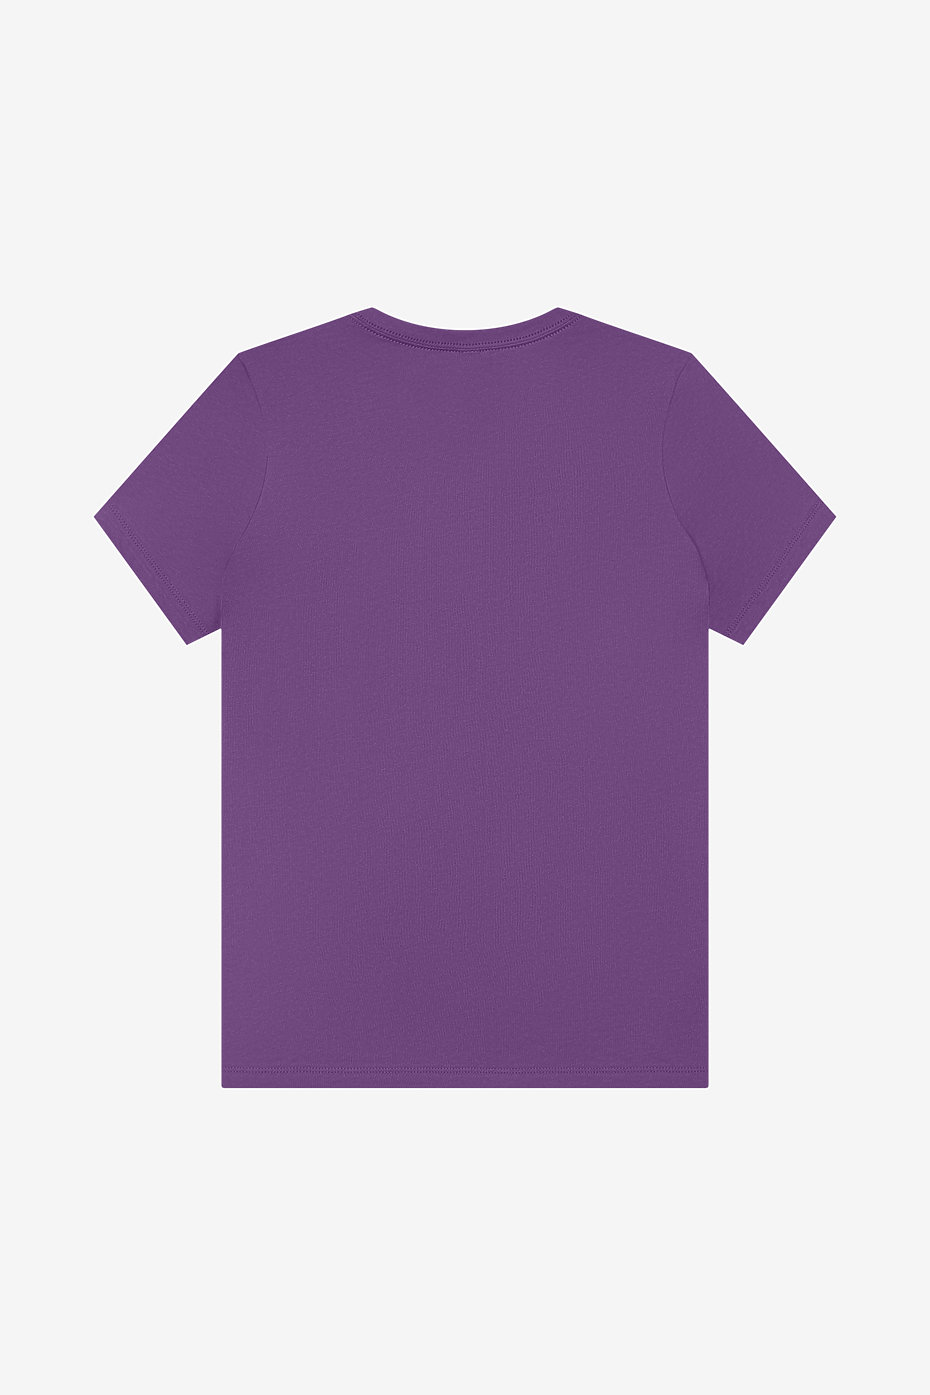 Plain Jersey T Shirts | Wholesale Jersey T Shirts | Womens Bulk T ...